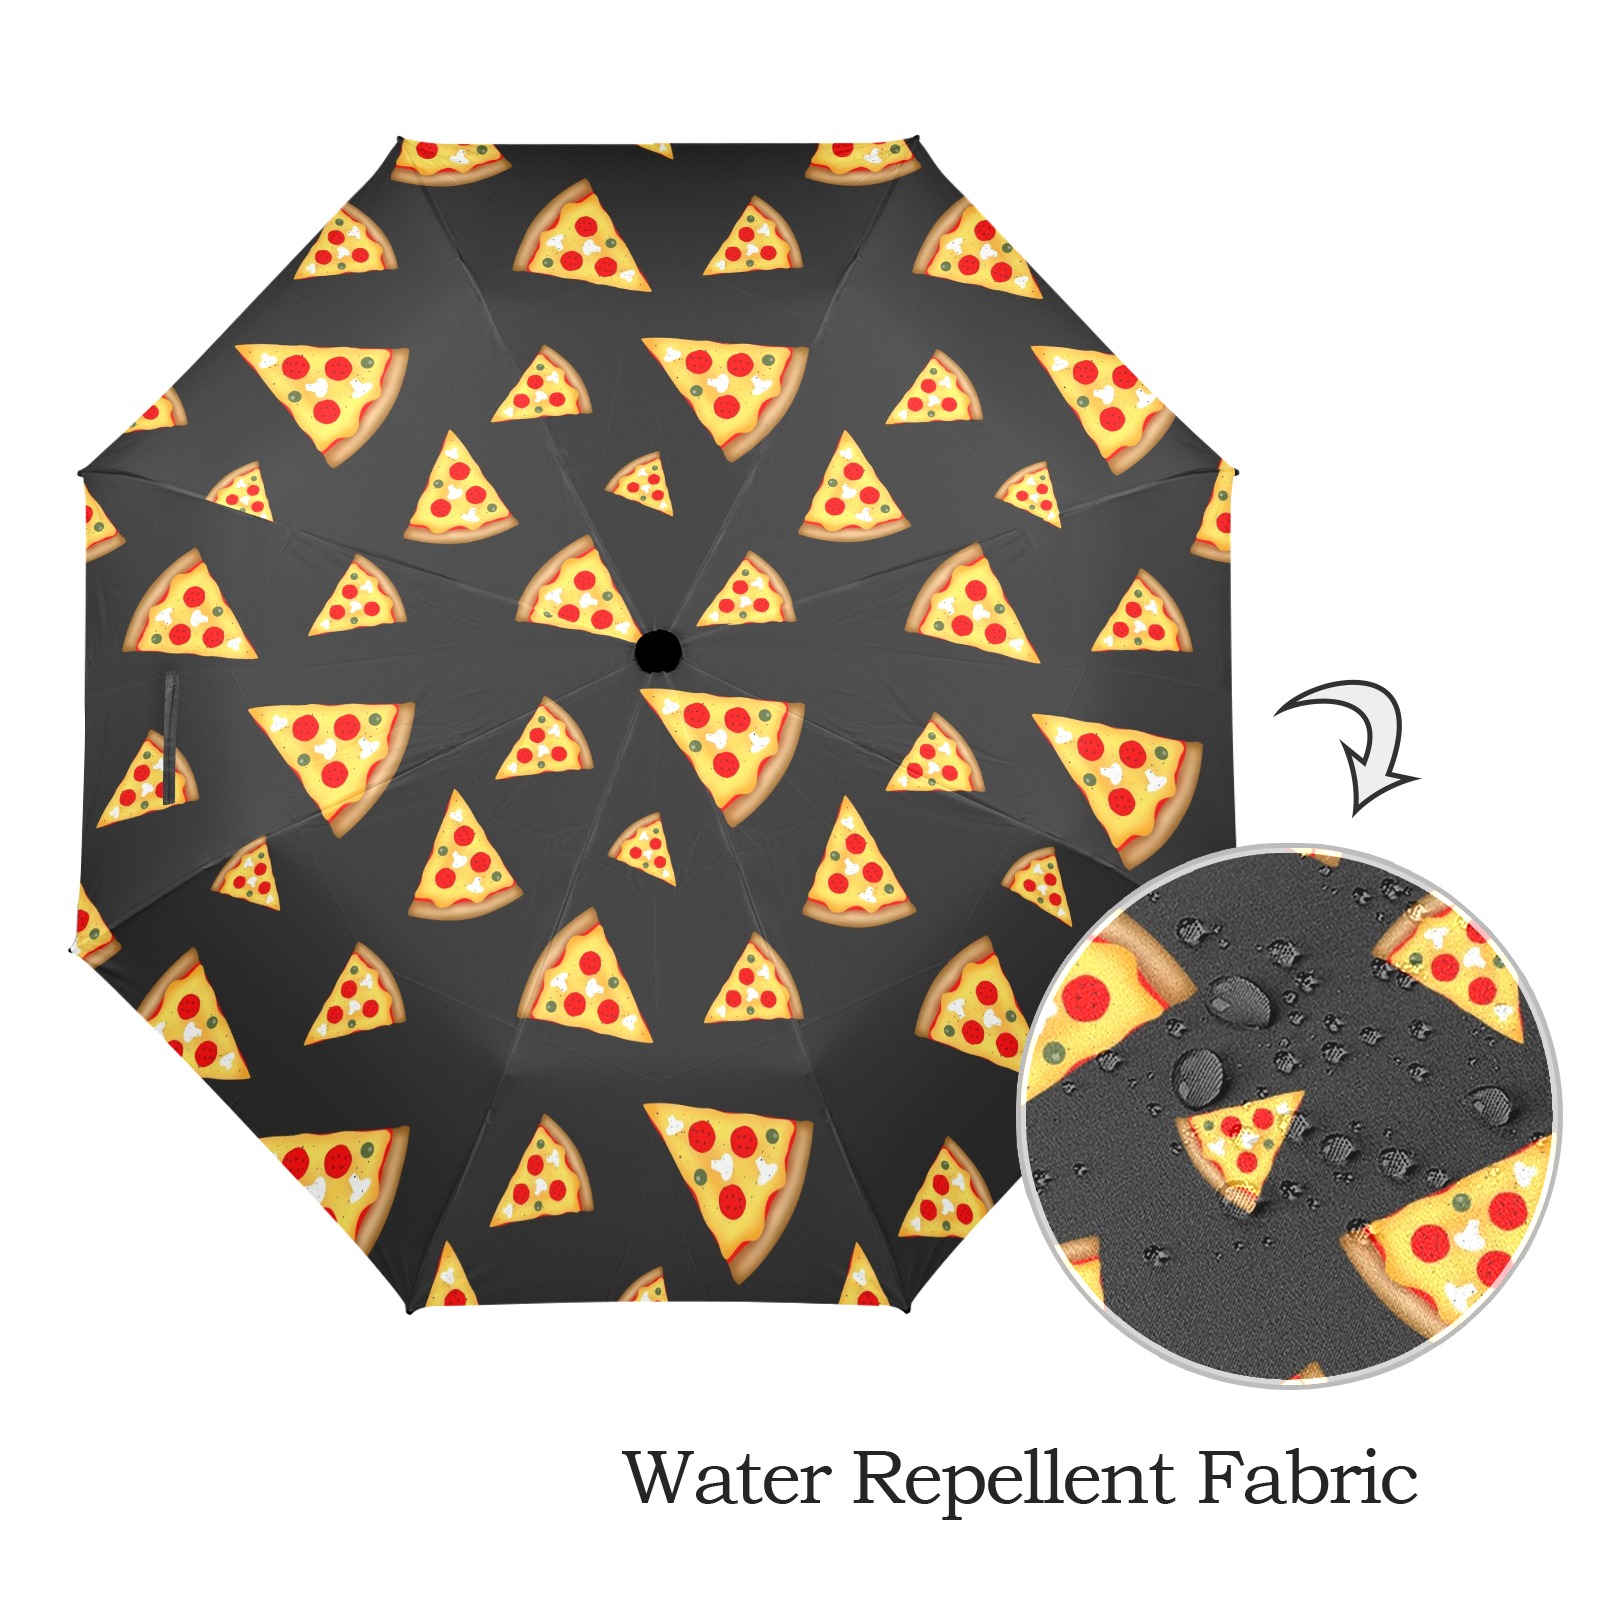 Cool and fun pizza slices pattern dark gray Semi-Automatic Foldable Umbrella (Model U12)